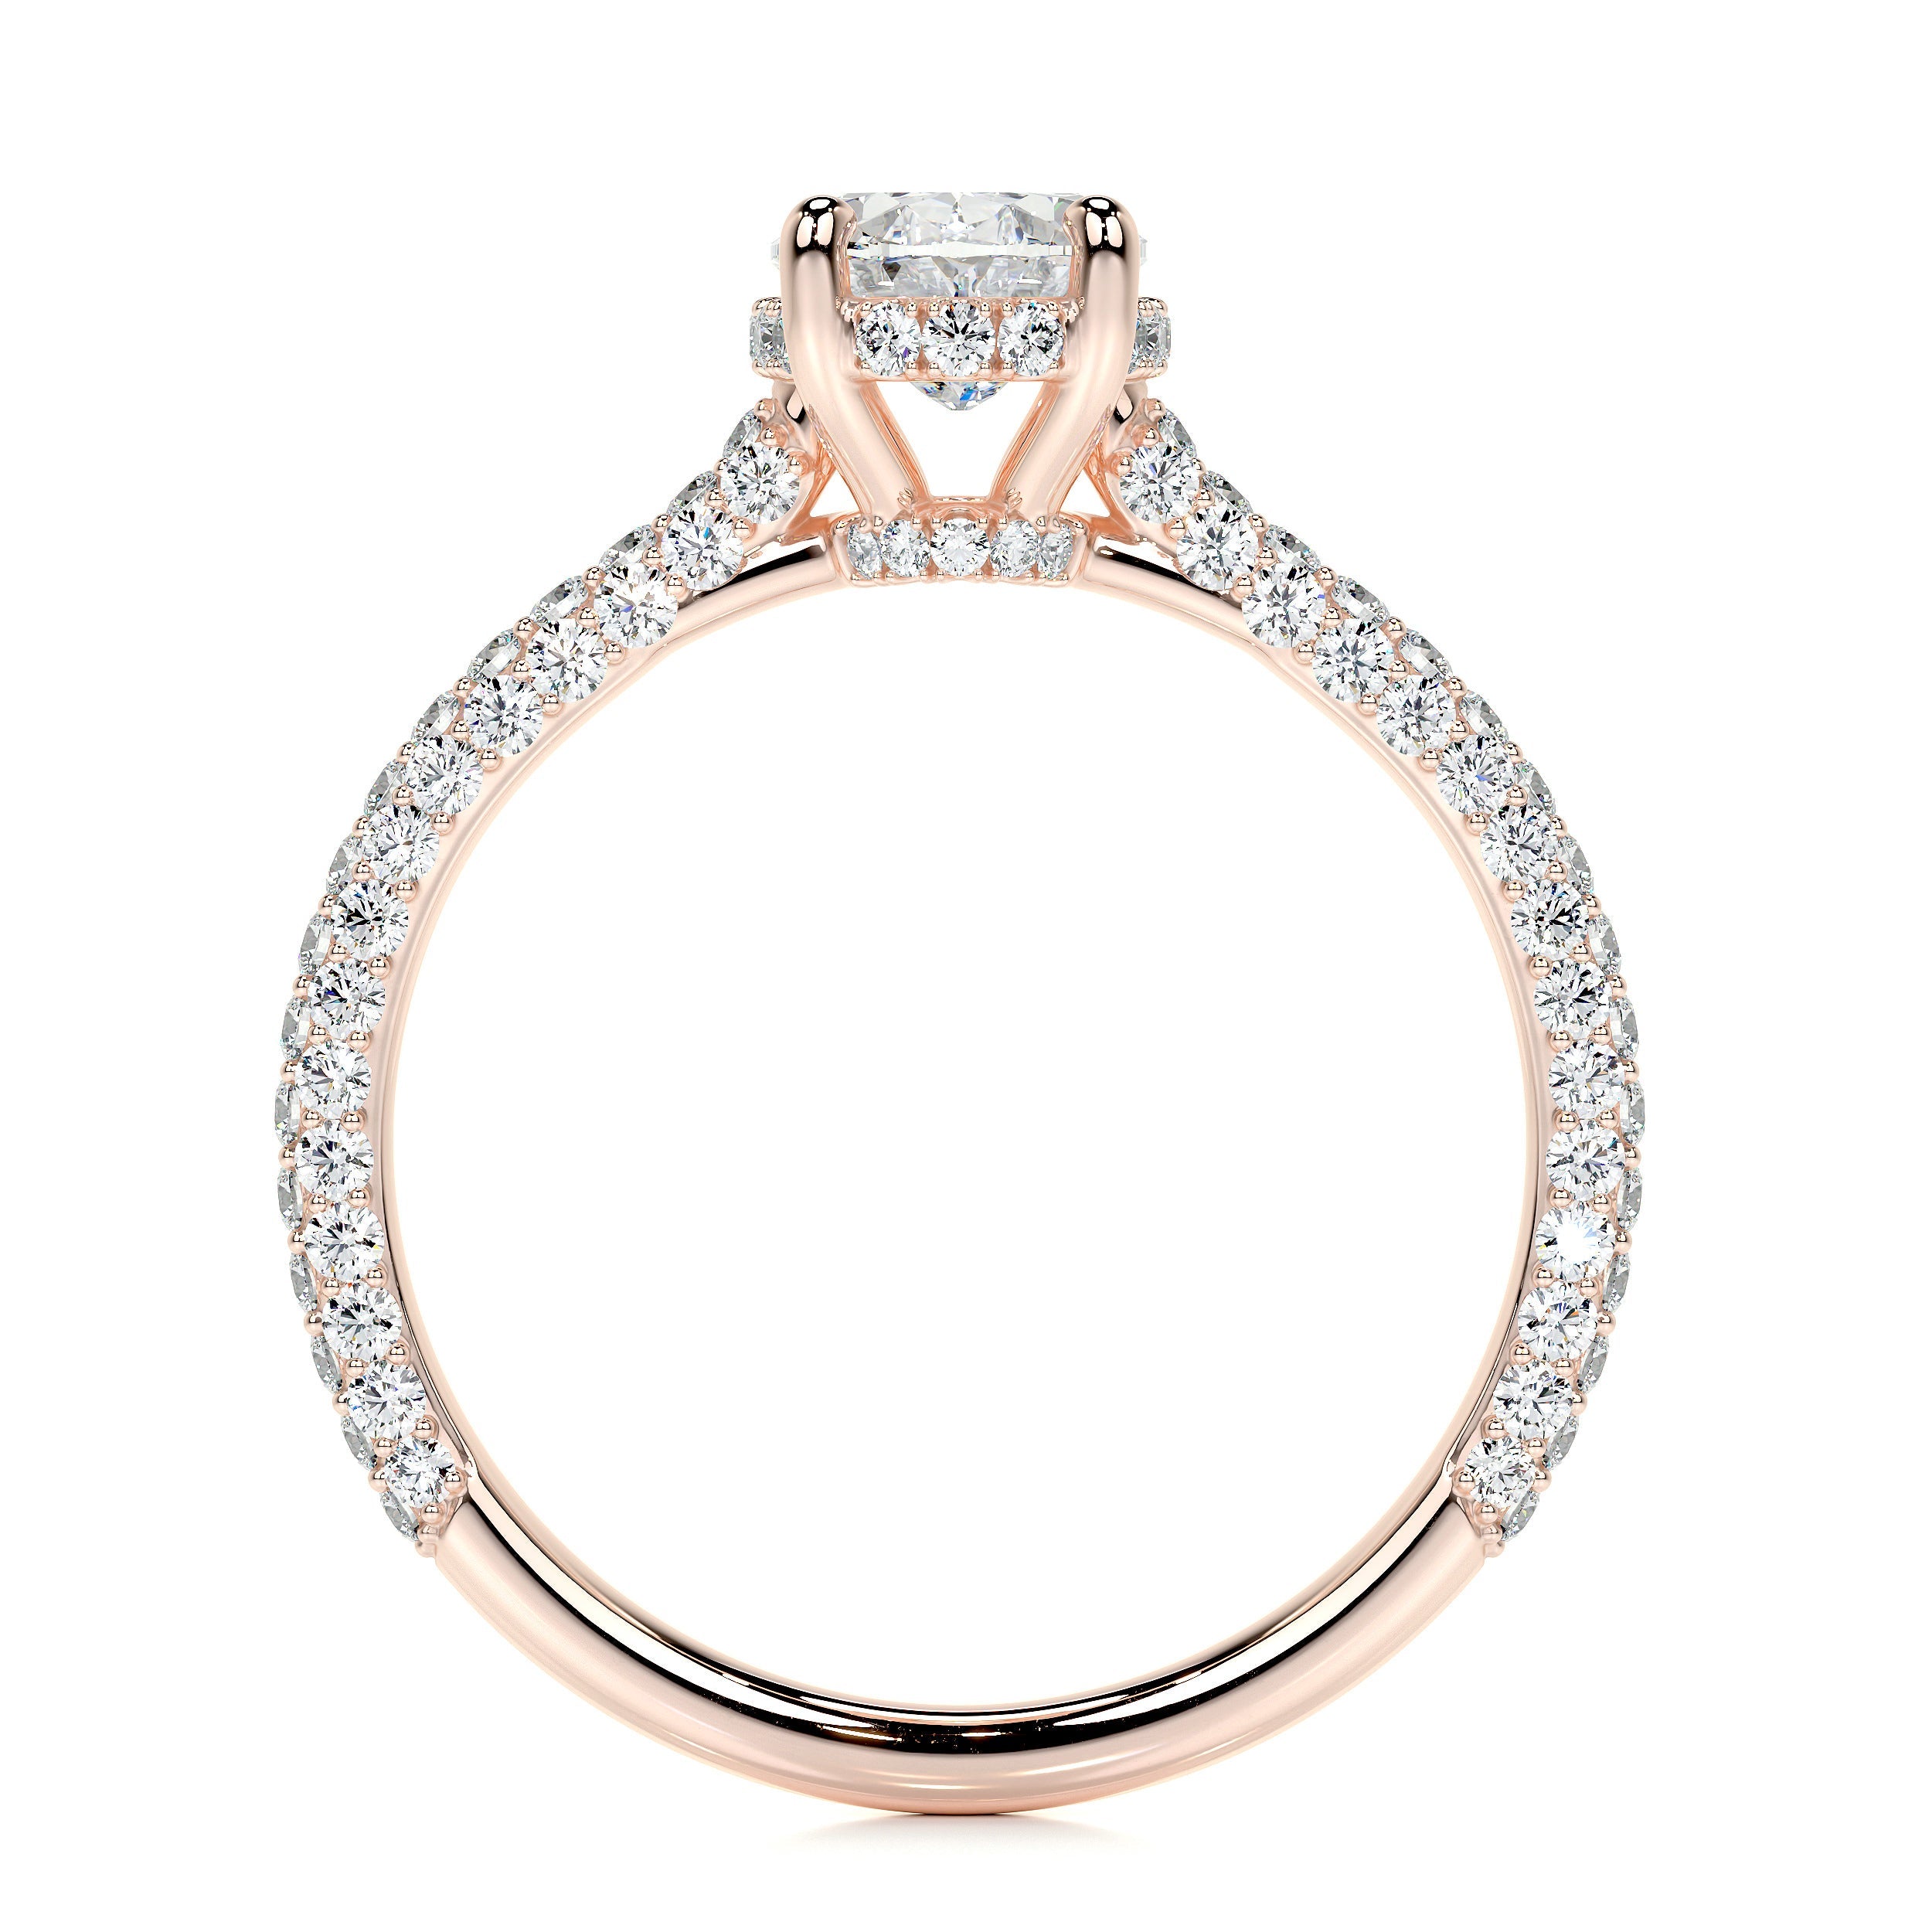 Rebecca Lab Grown Diamond Ring   (1.8 Carat) -14K Rose Gold